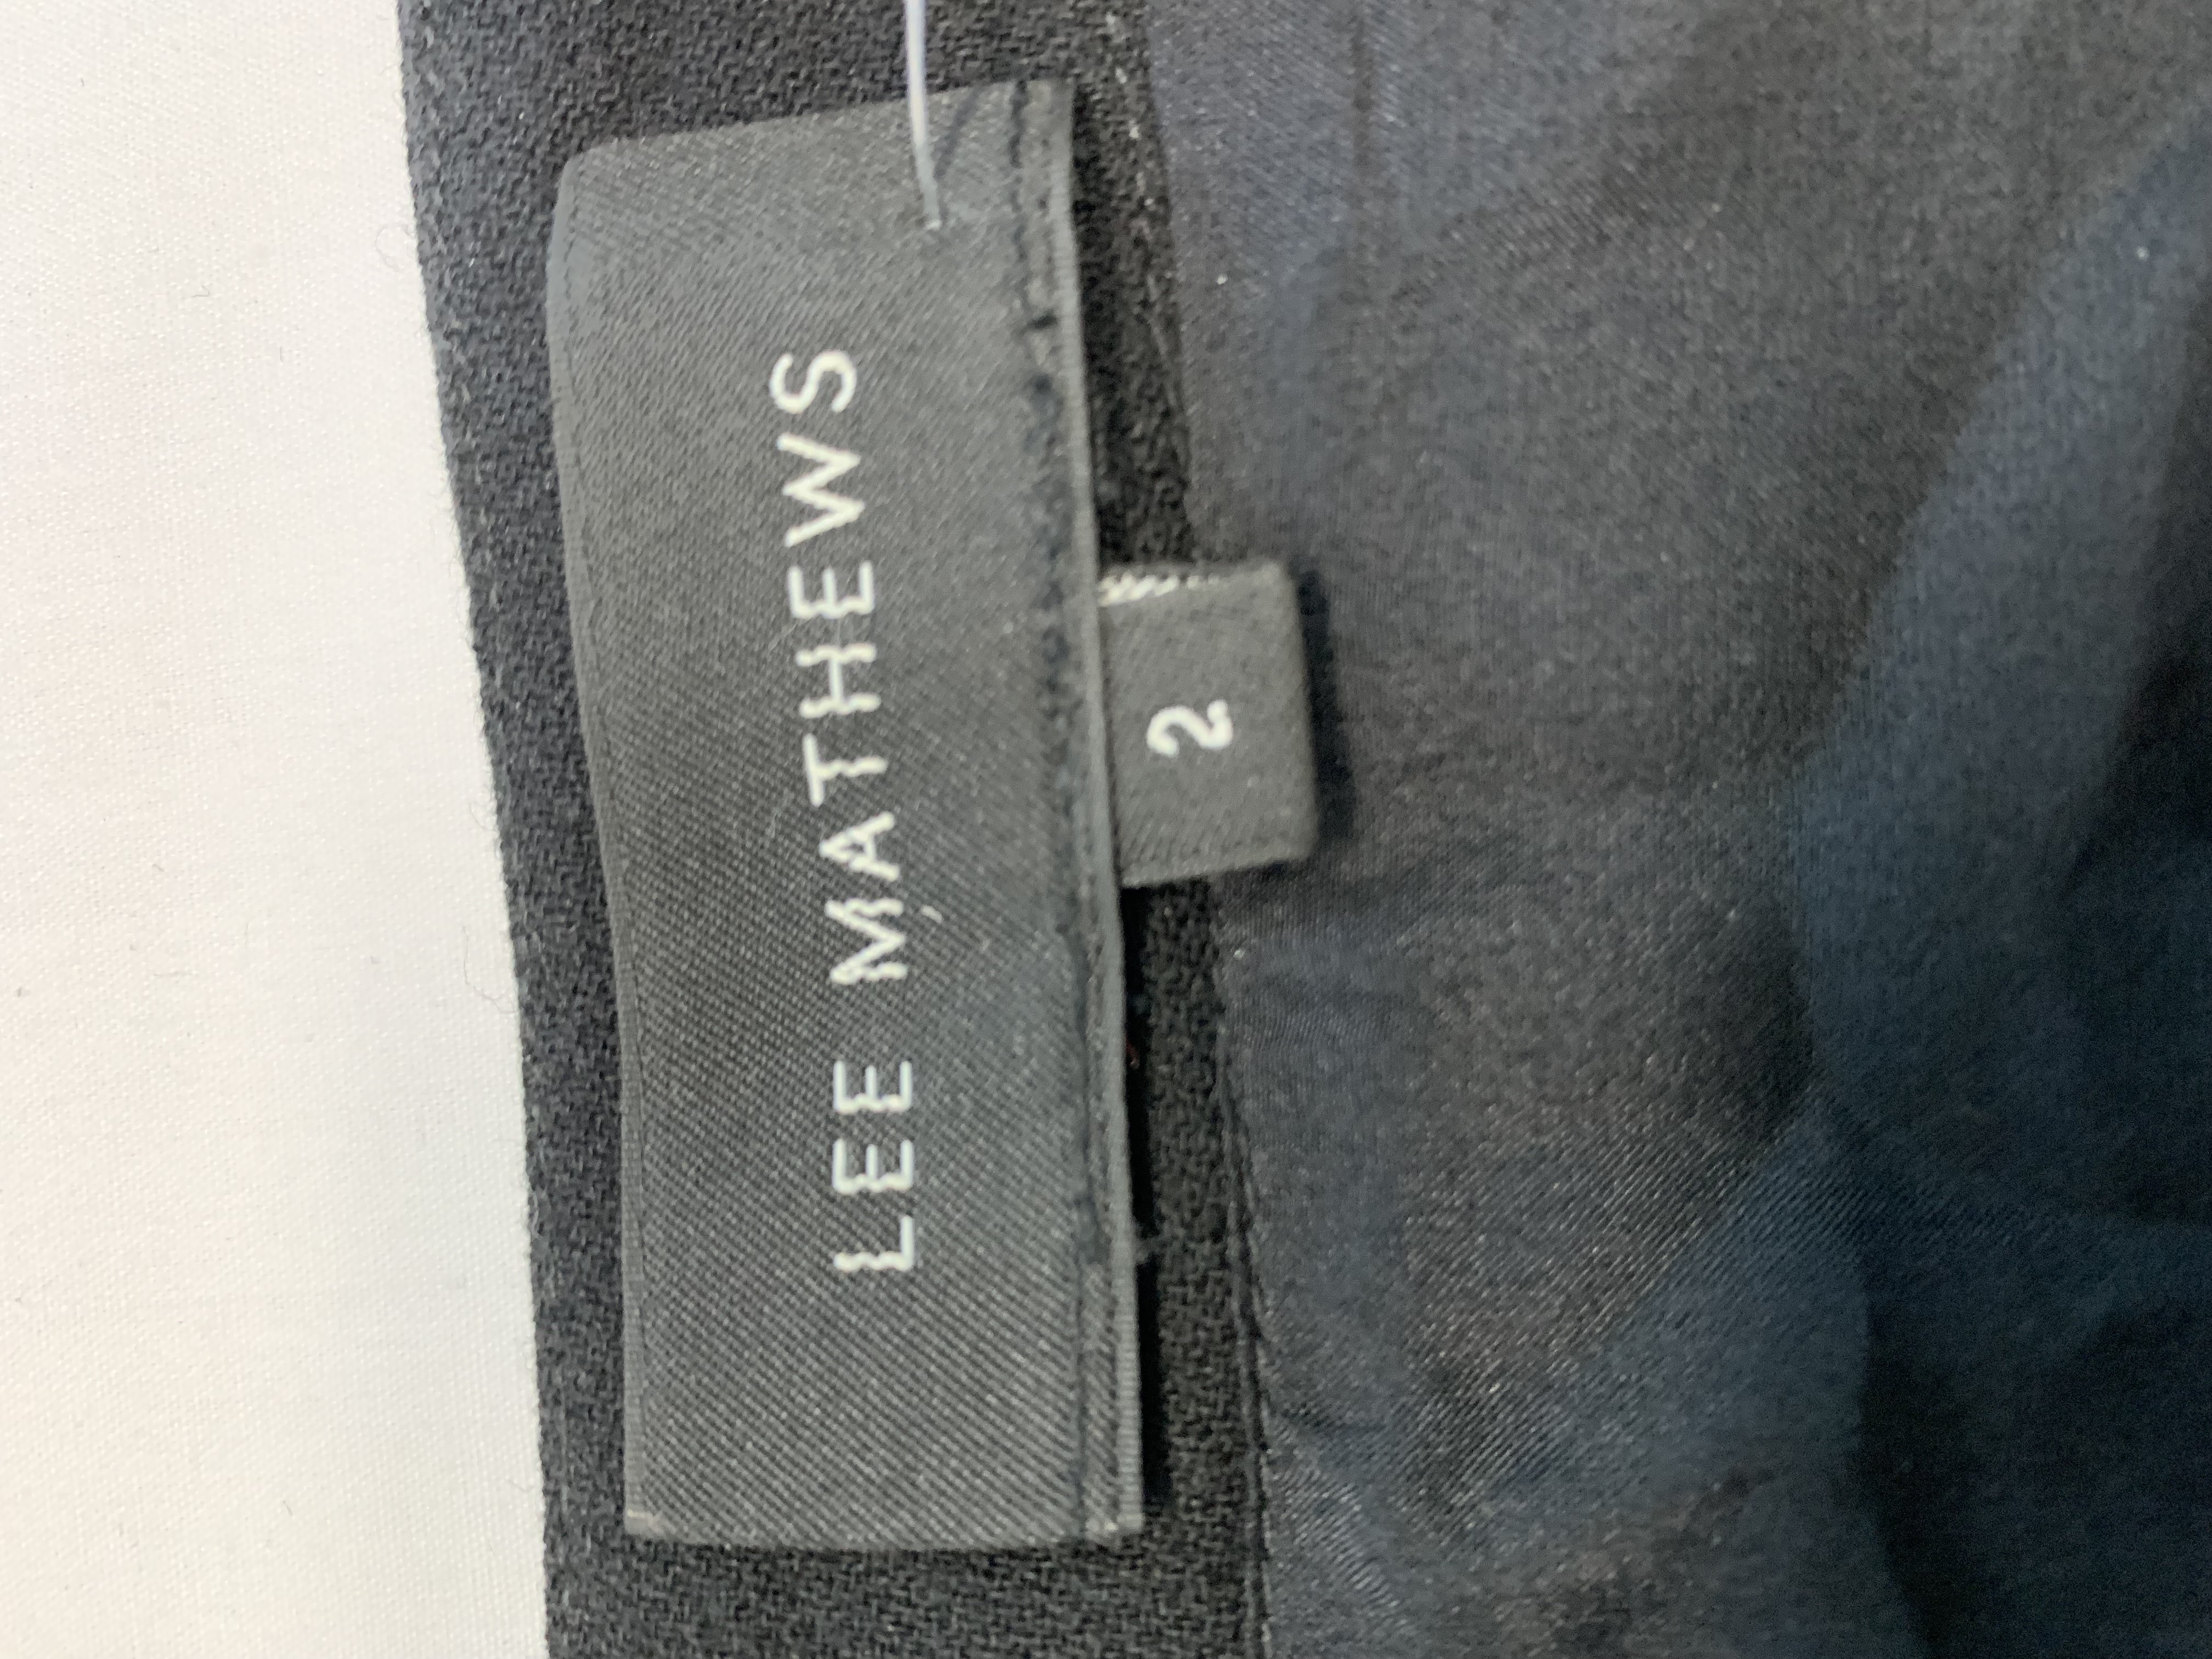 LEE MATHEWS A-line Skirt